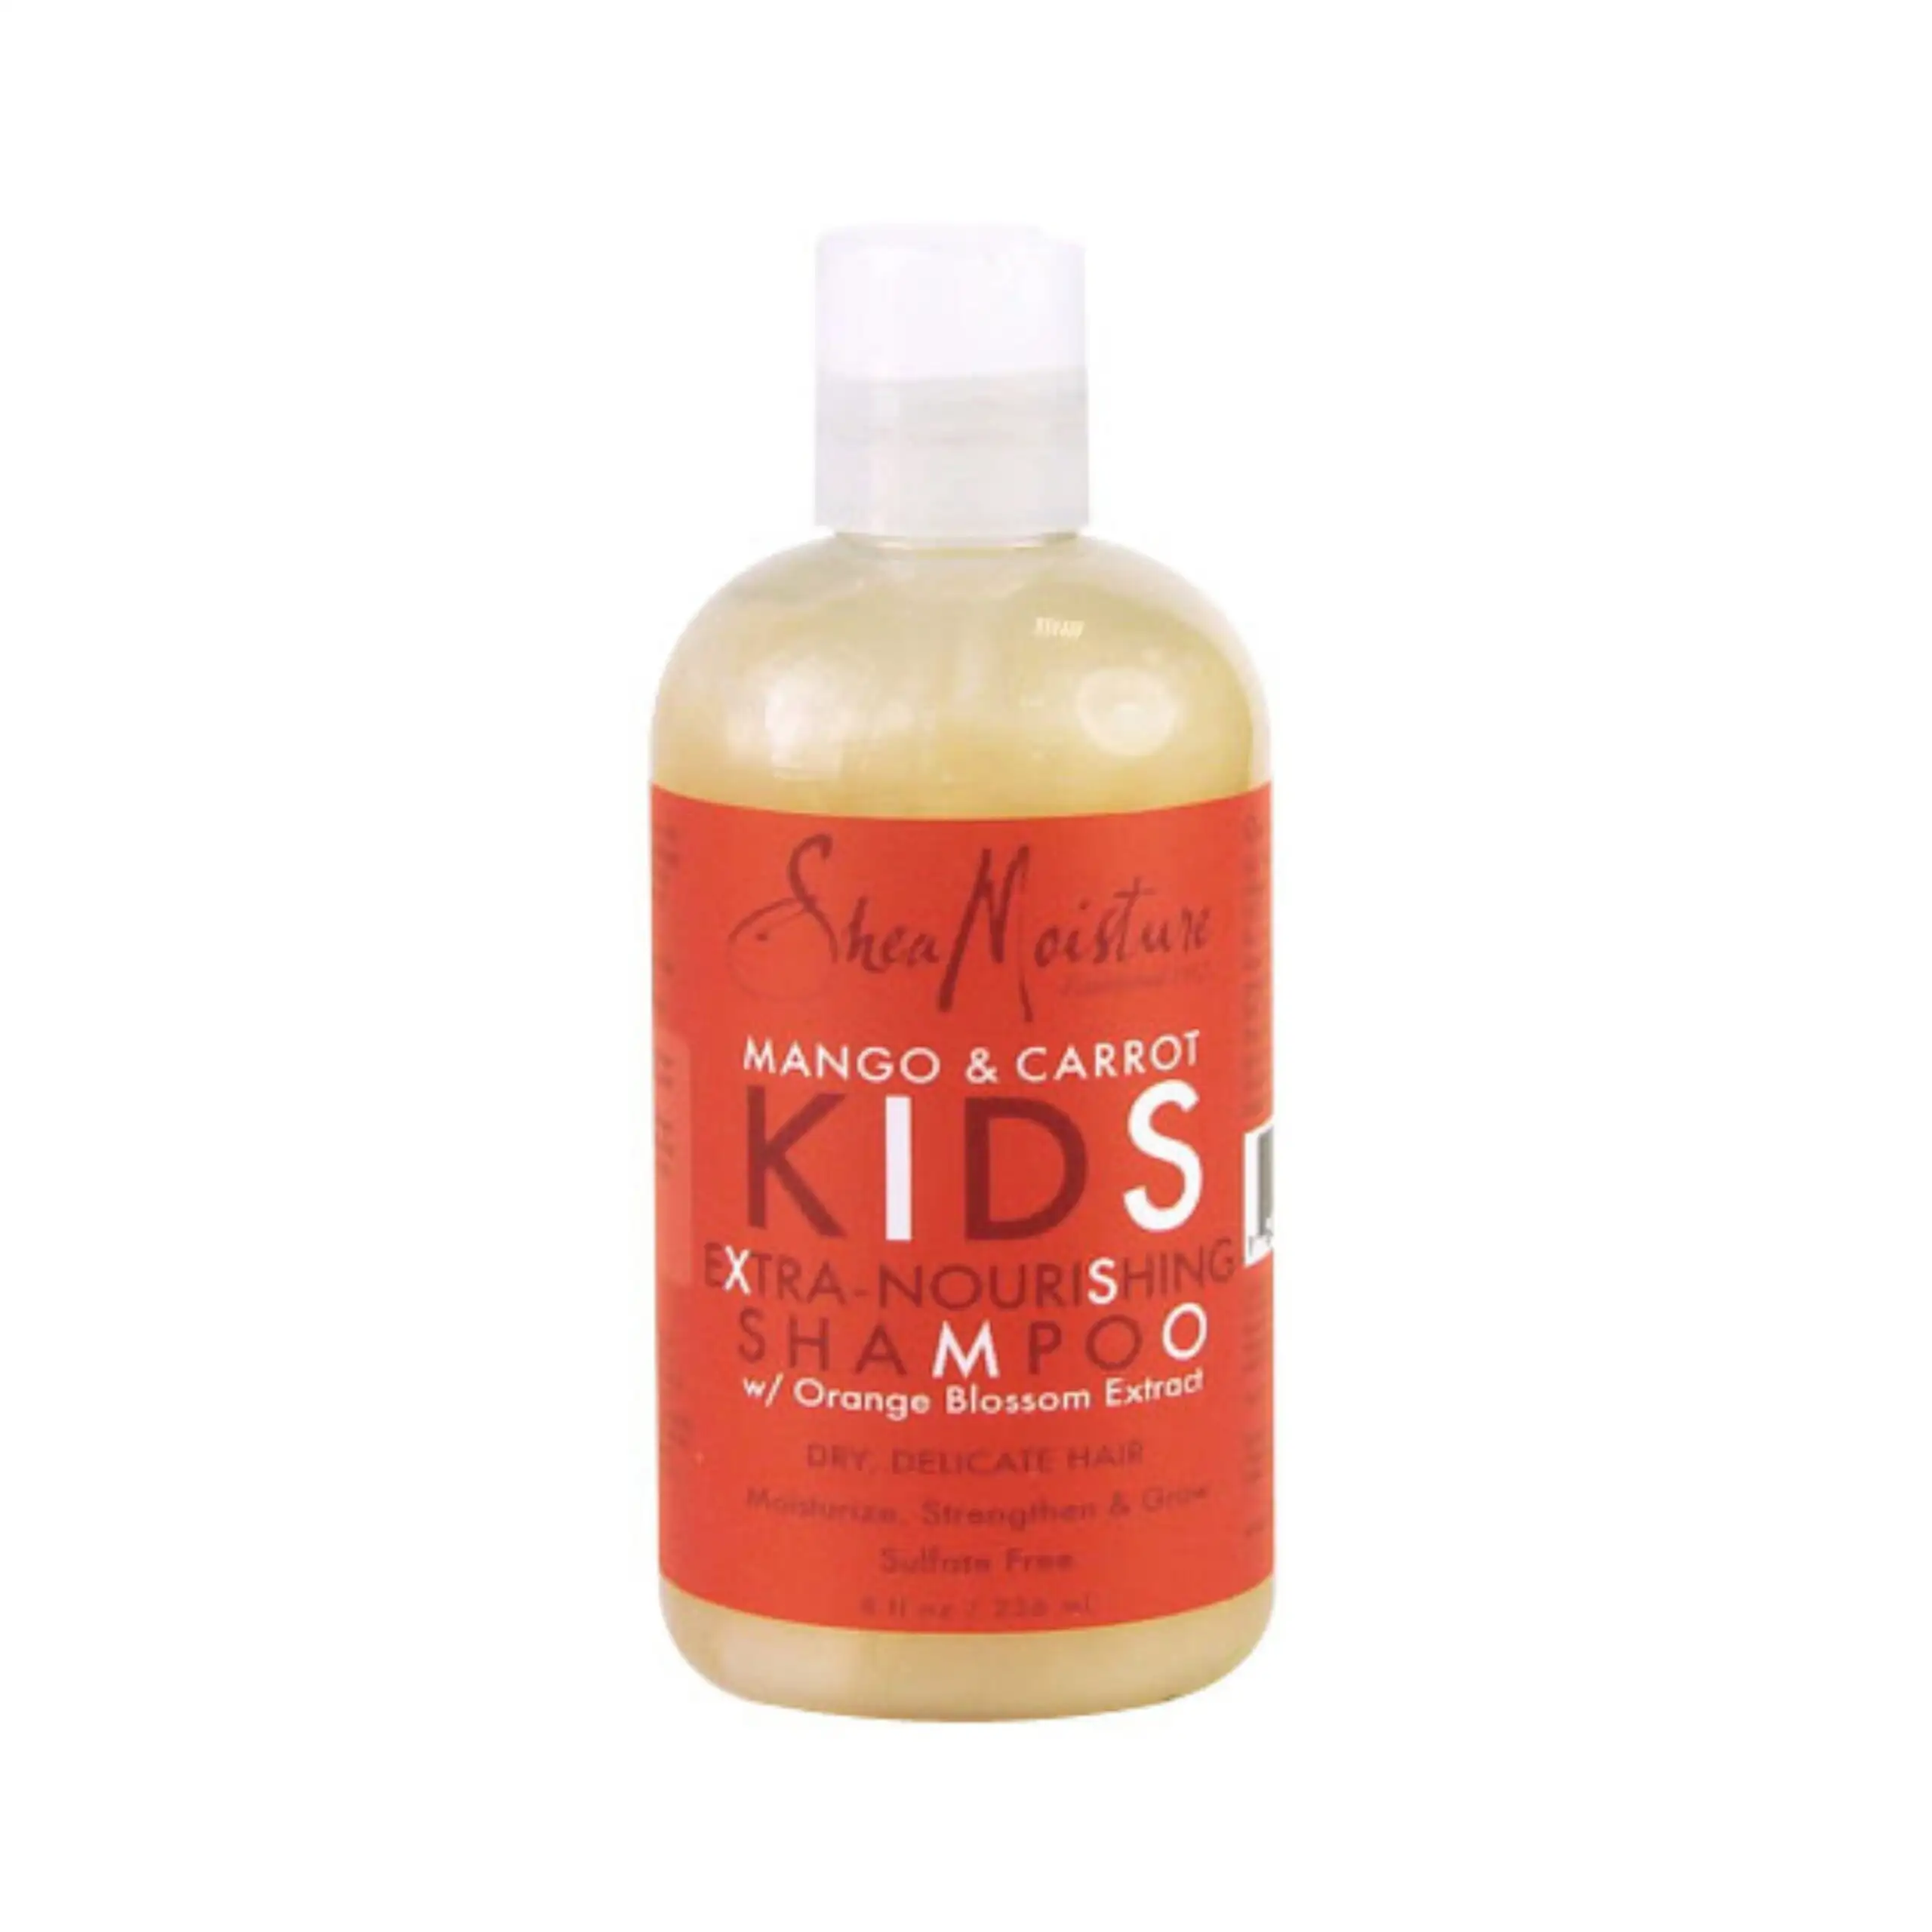 Shea moisture kids shampoo 236ml_4322. DIAYTAR SENEGAL - Votre Passage vers la Découverte. Explorez notre boutique en ligne pour trouver des trésors qui vous attendent, du traditionnel à l'avant-garde.